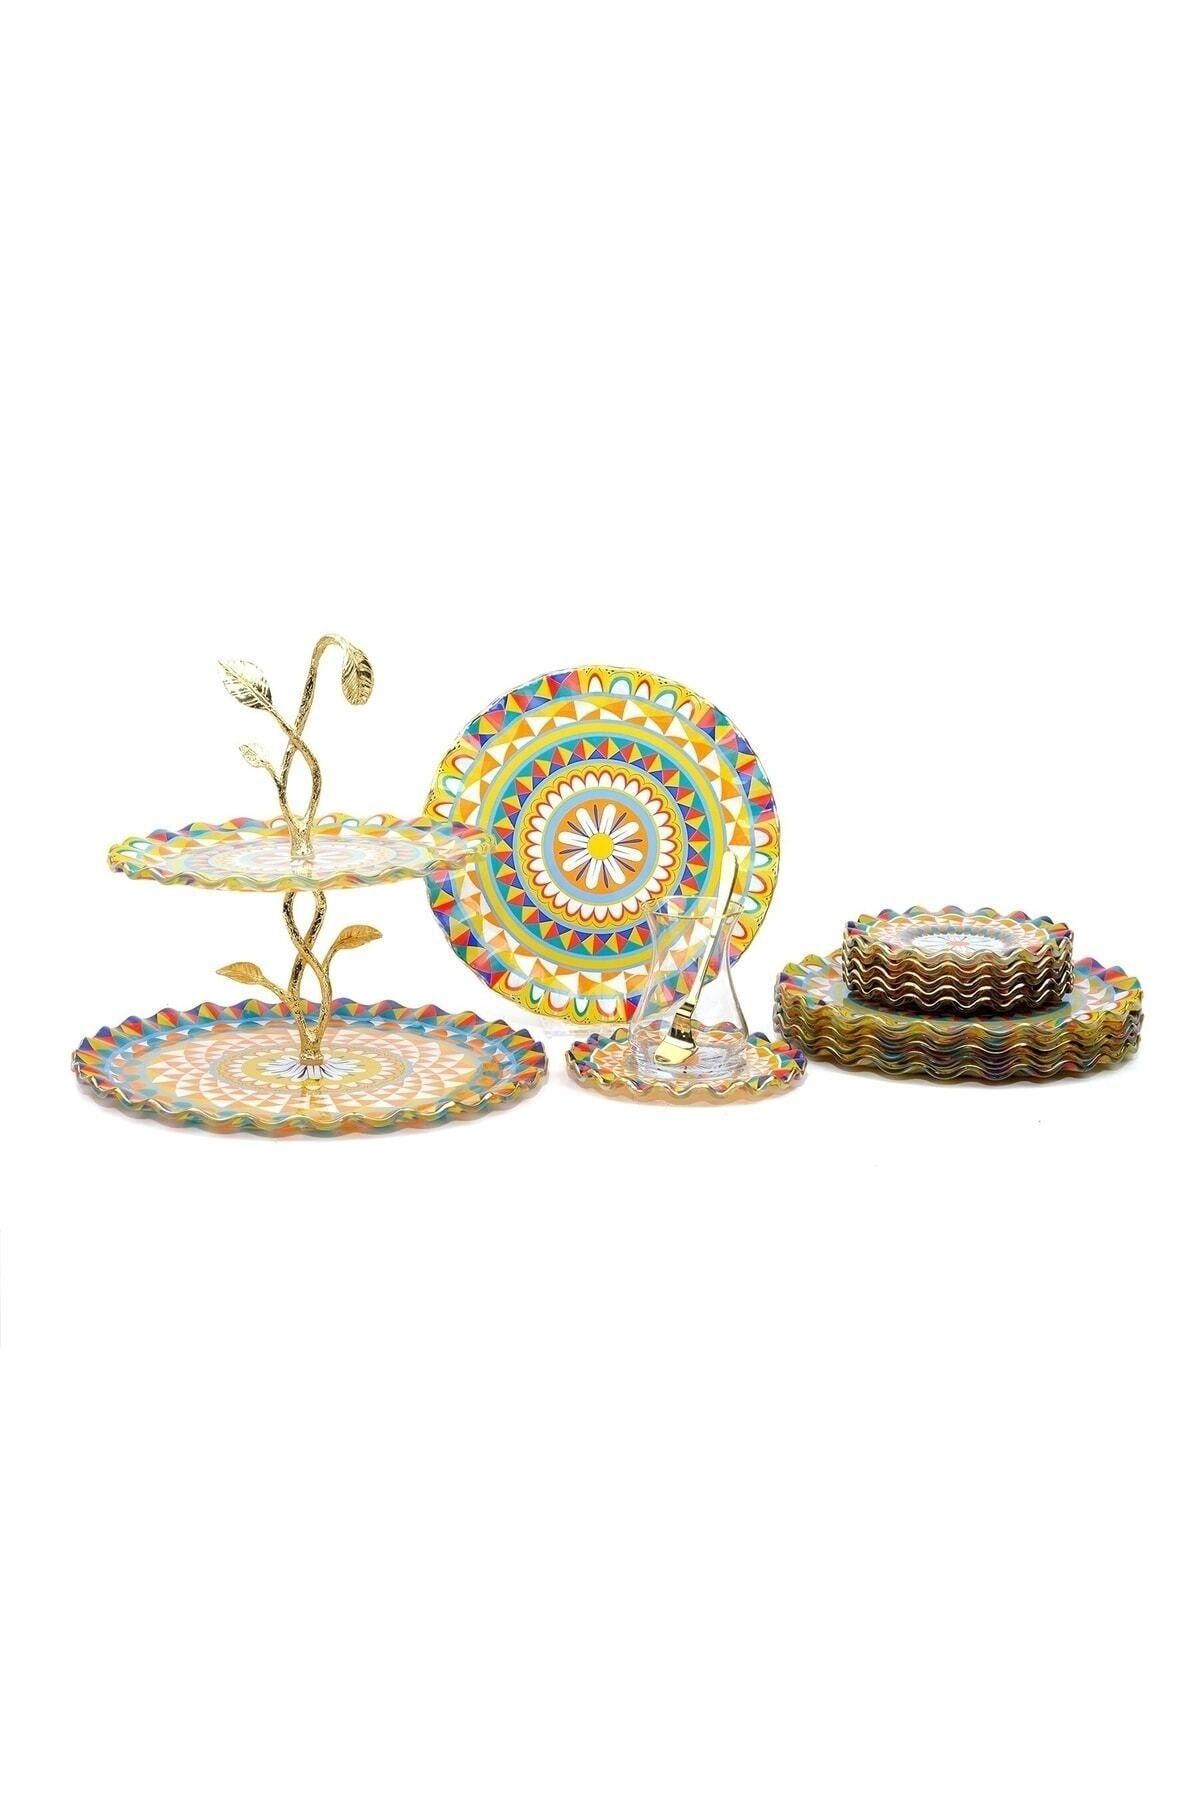 Glore Mozaik Altın Yaldızlı 6 Kişilik 25 Parça Pasta Çay Ikram Takımı